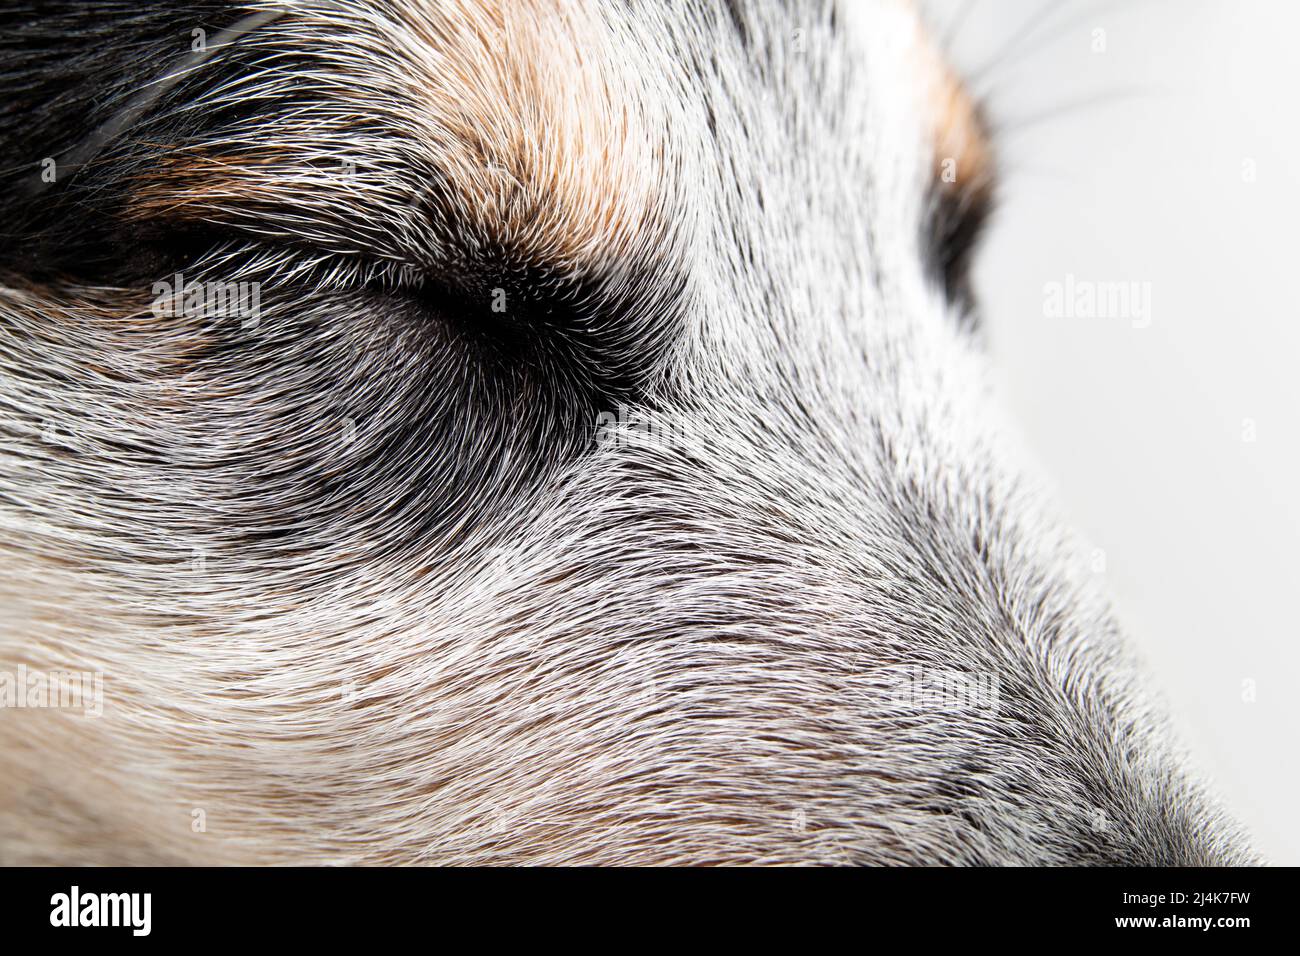 Niedlicher Welpe schläft oder schlaft, Nahaufnahme. Seitenansicht eines schwarz-weißen Hundes mit geschlossenen Augen. 9 Wochen alter blauer Rüde-Heeler-Welpen. Ruhige Szene. Stockfoto